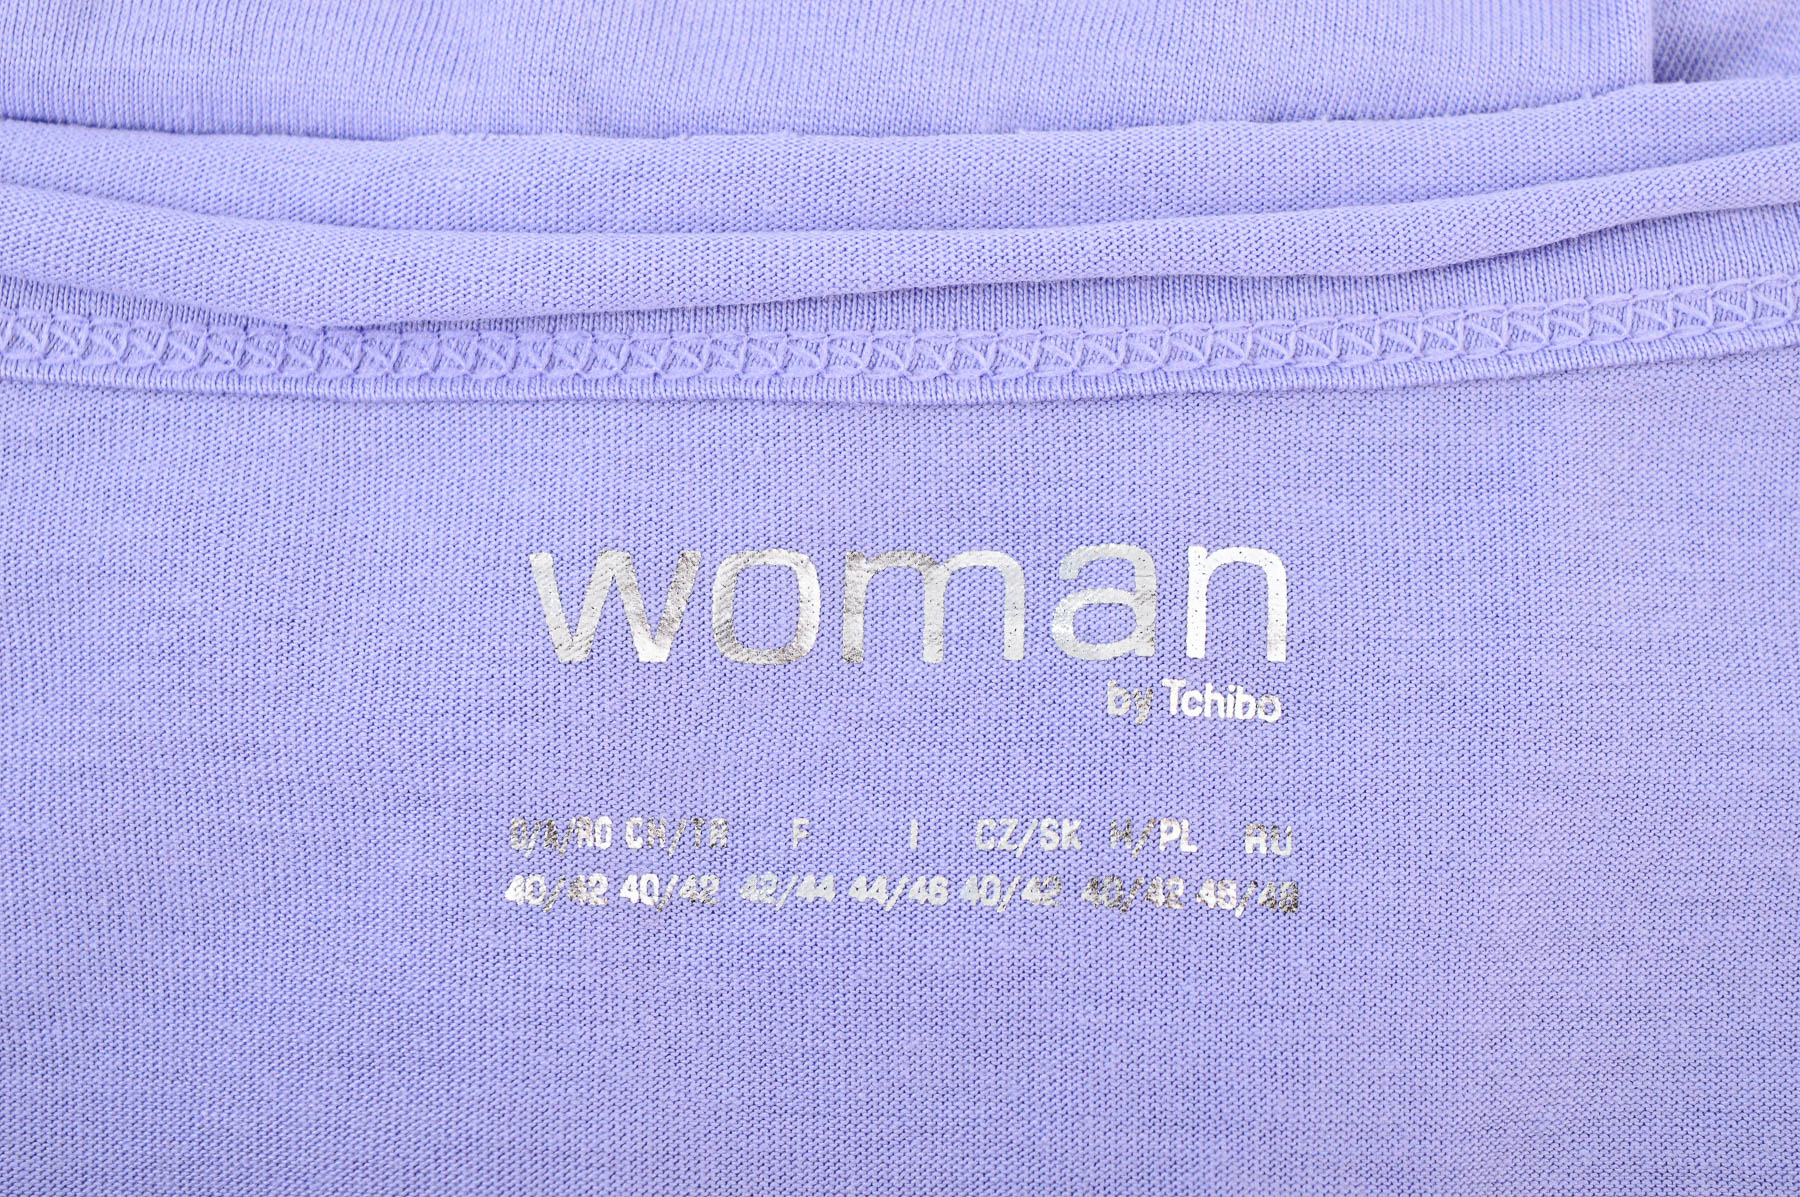 Women's blouse - Woman by Tchibo - 2